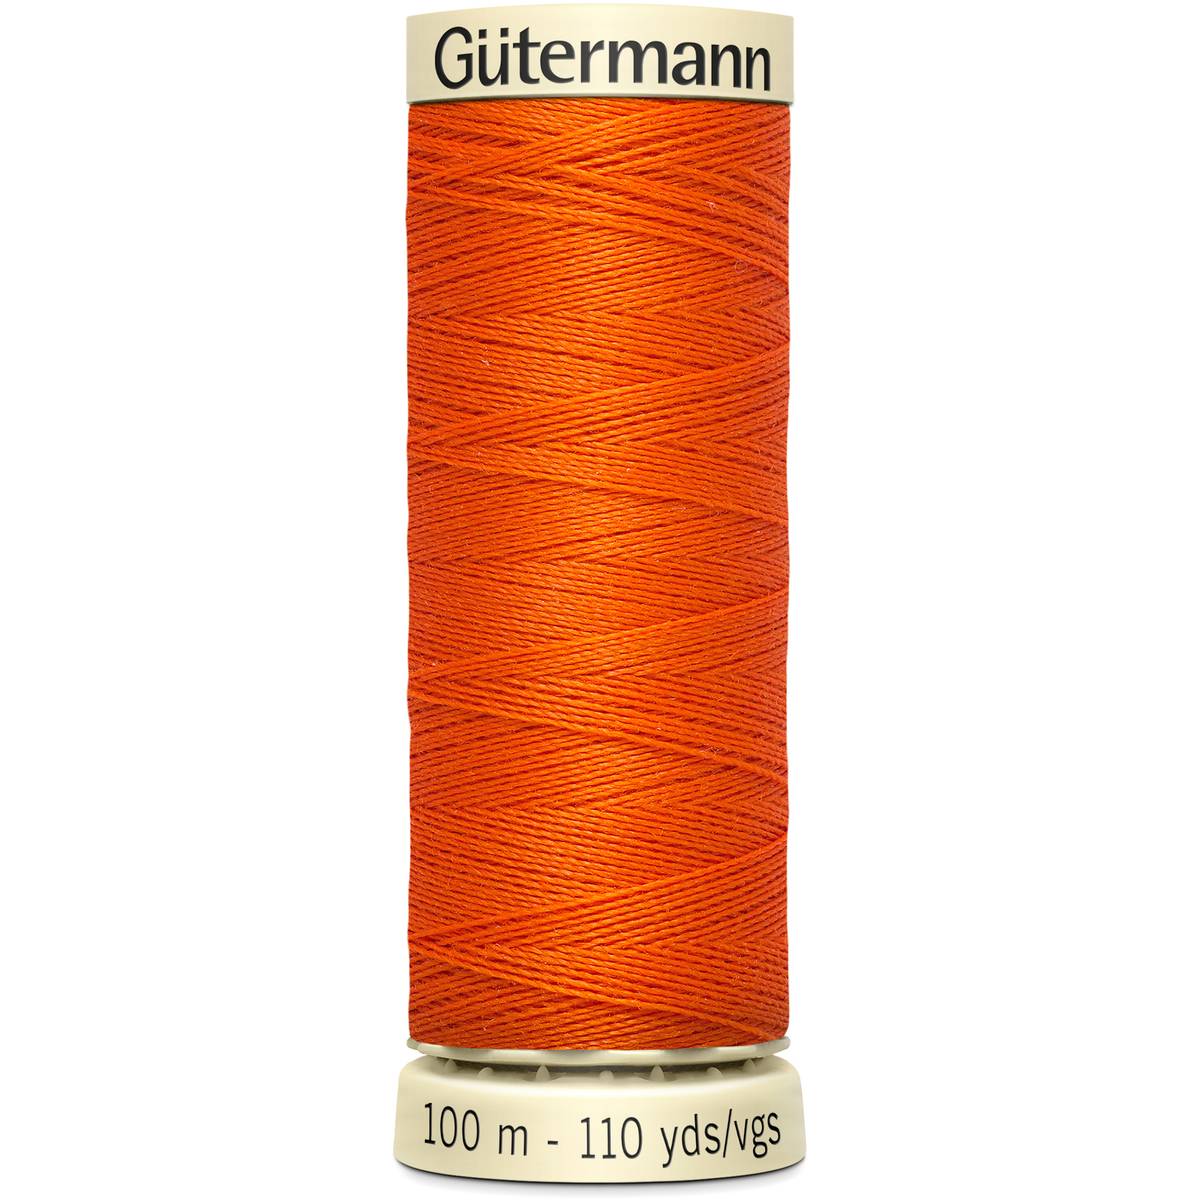 Gutermann Bright Orange Sew All Thread 100m (351)